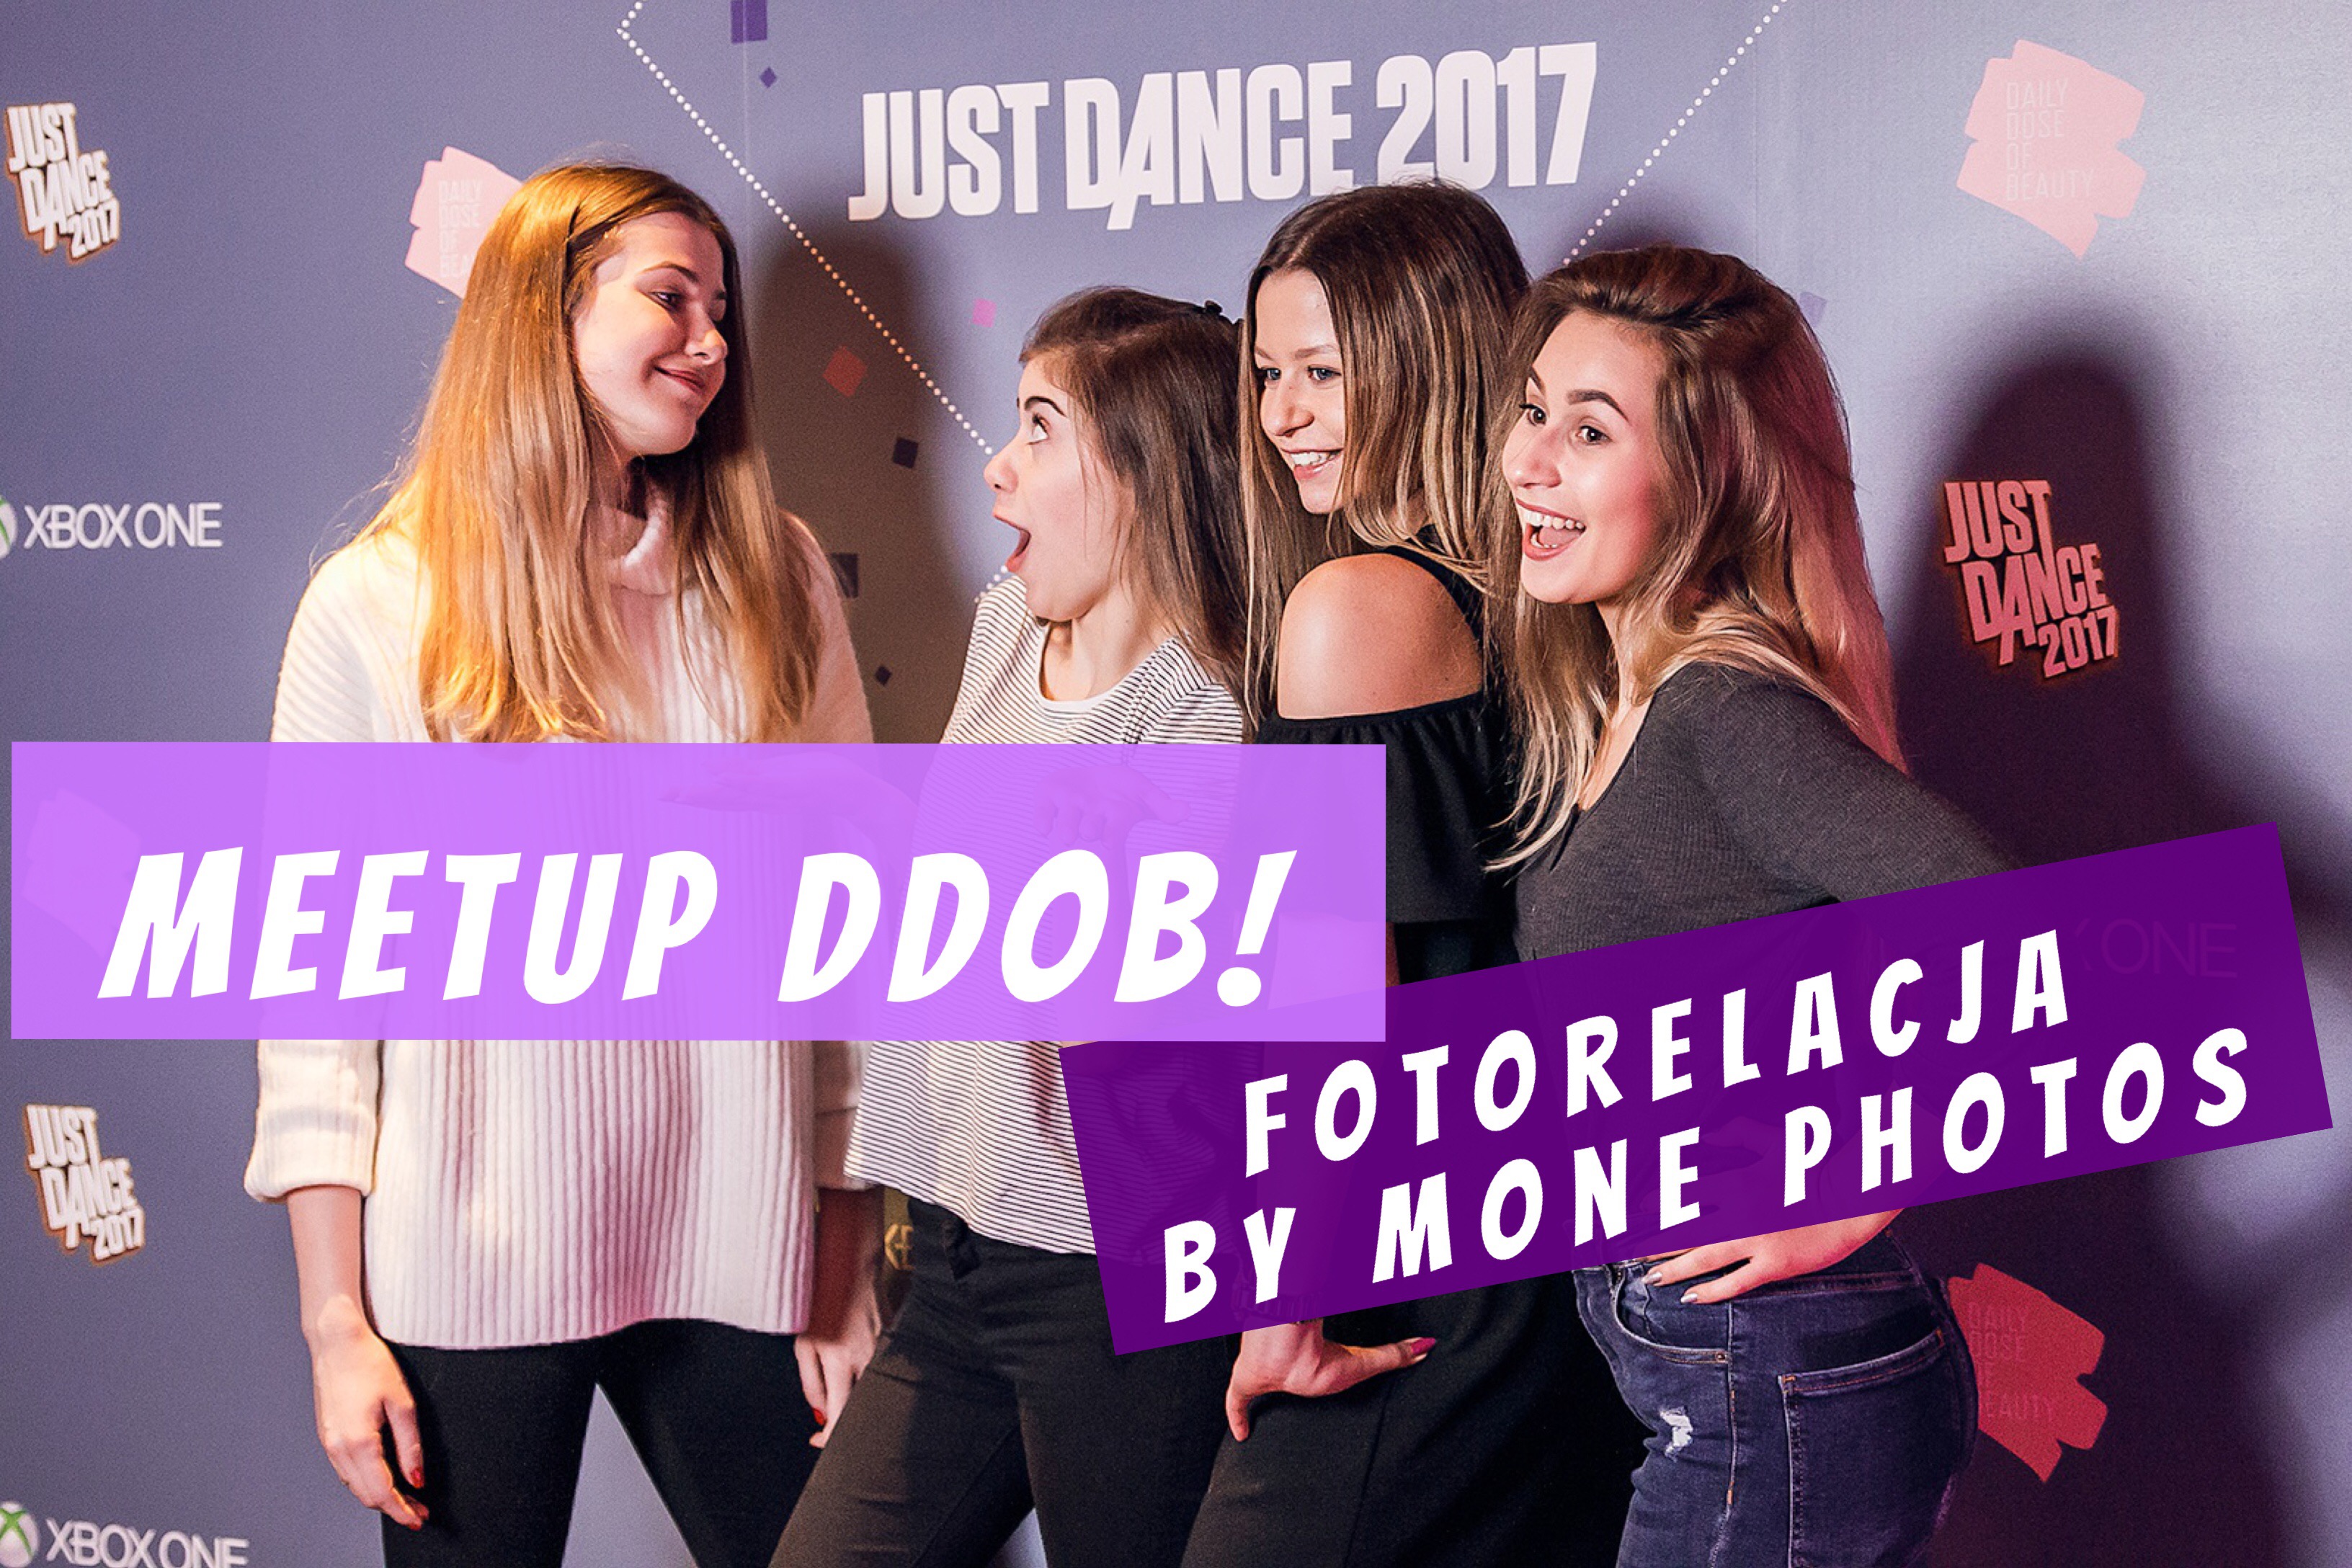  Mone_Photos Fotorelacja z imprezy DDOB x JUST DANCE + wasze zdjęcia z ambasadorami